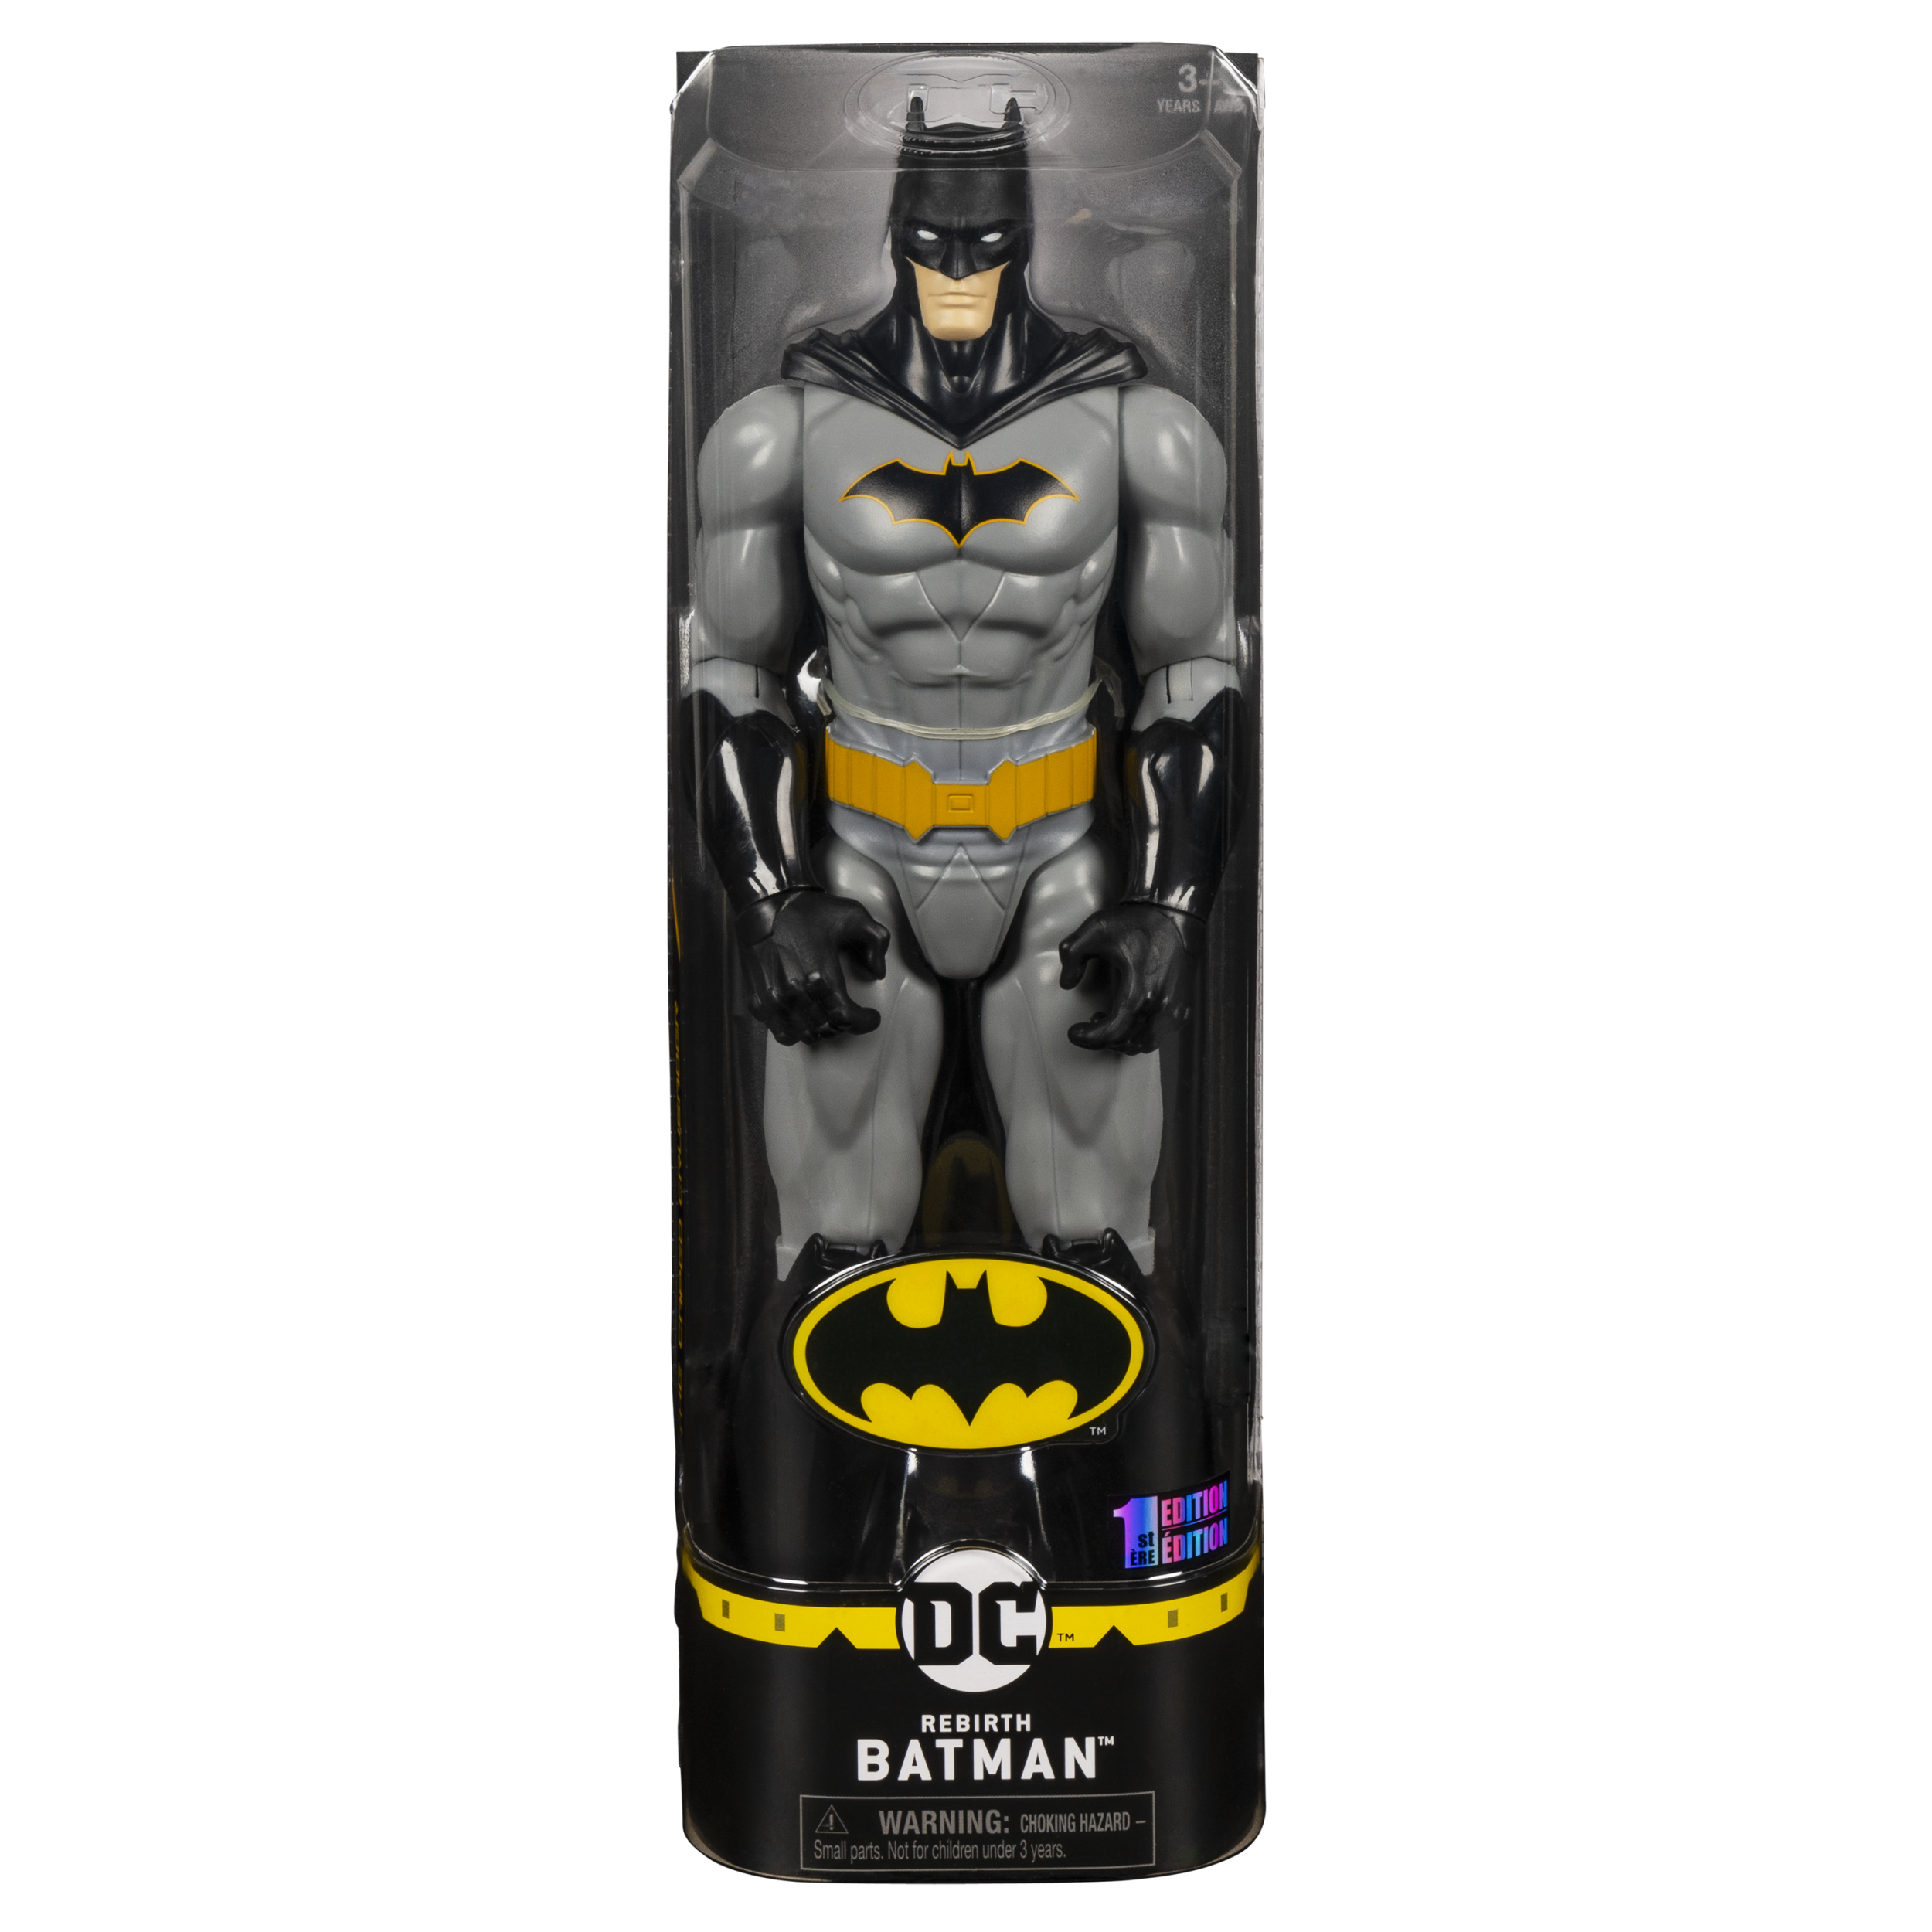 DC BATMAN 12IN AF rebirth Batman